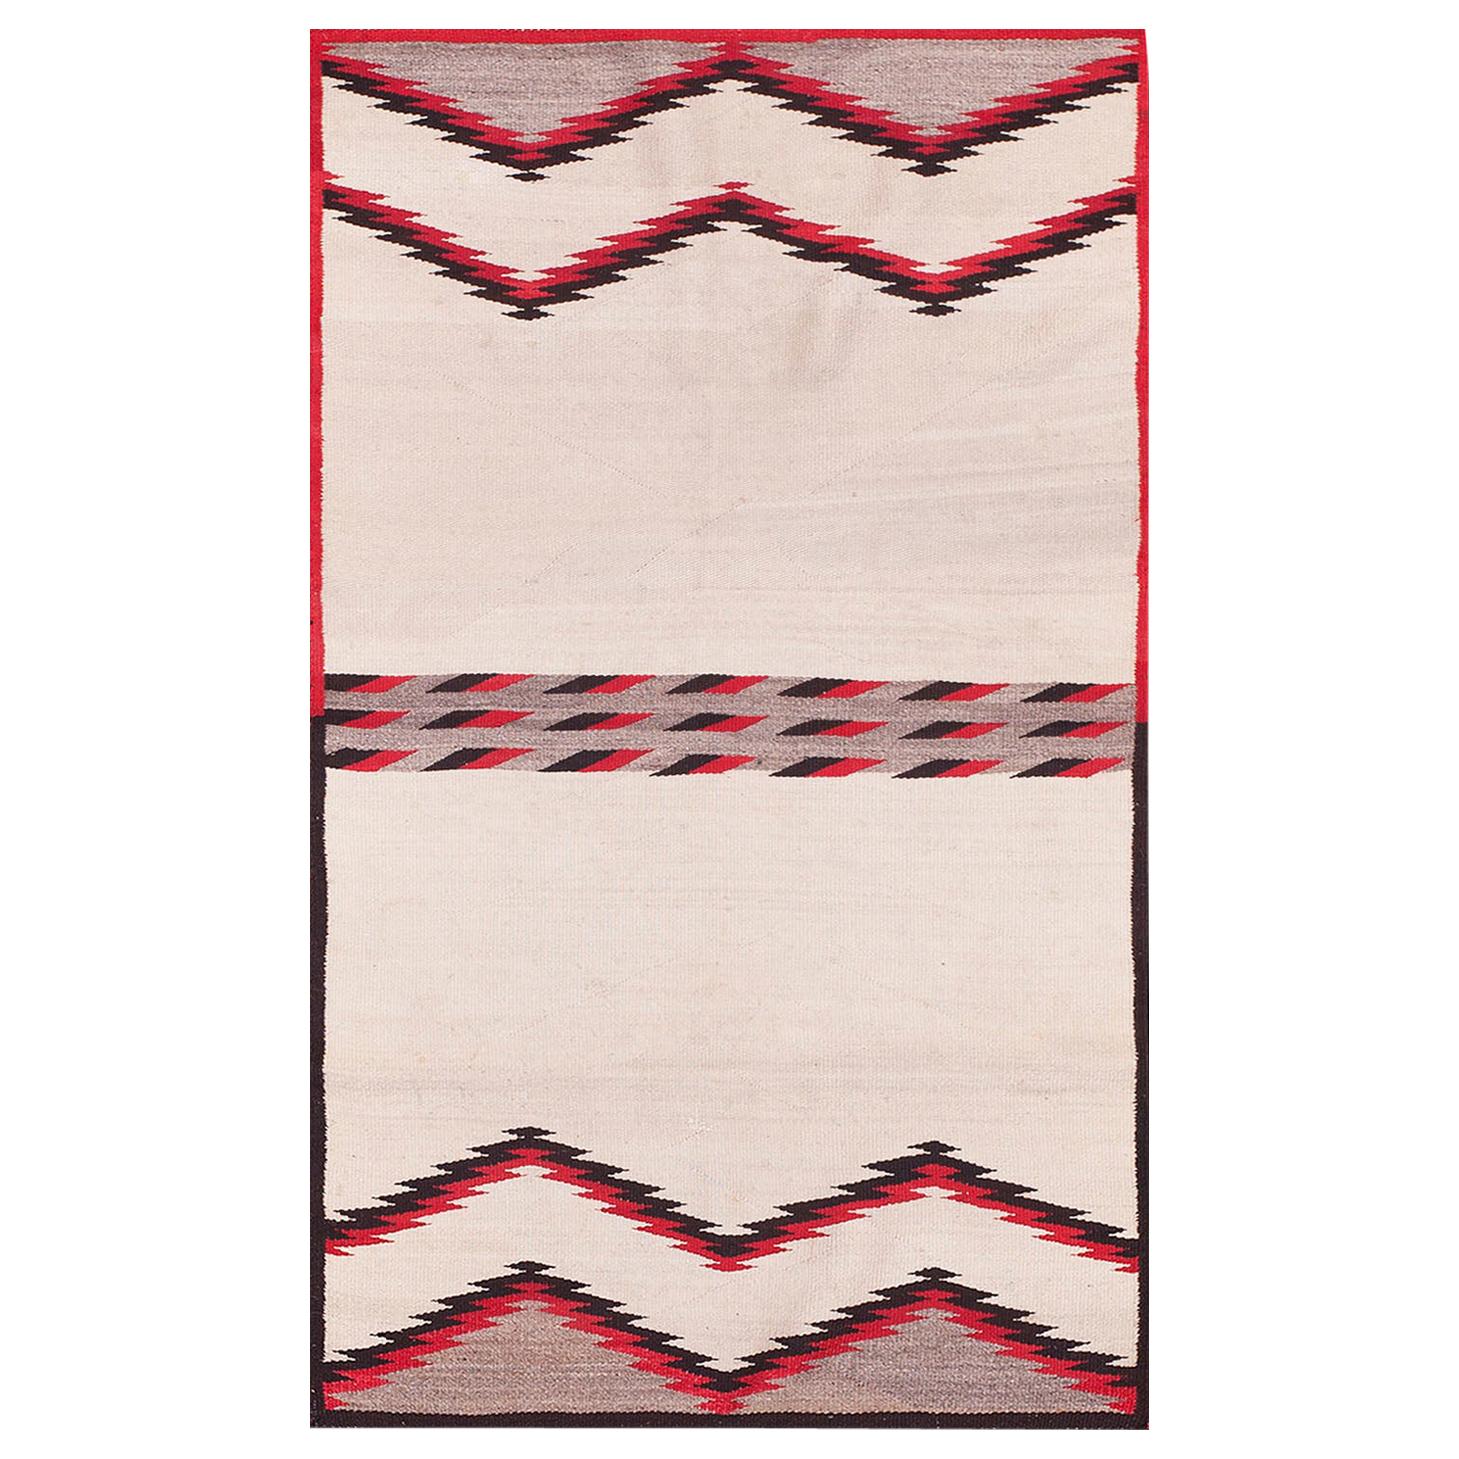 Amerikanischer Navajo-Satteldeppich des frühen 20. Jahrhunderts ( 2'8" x 4'4"- 81 x 132")